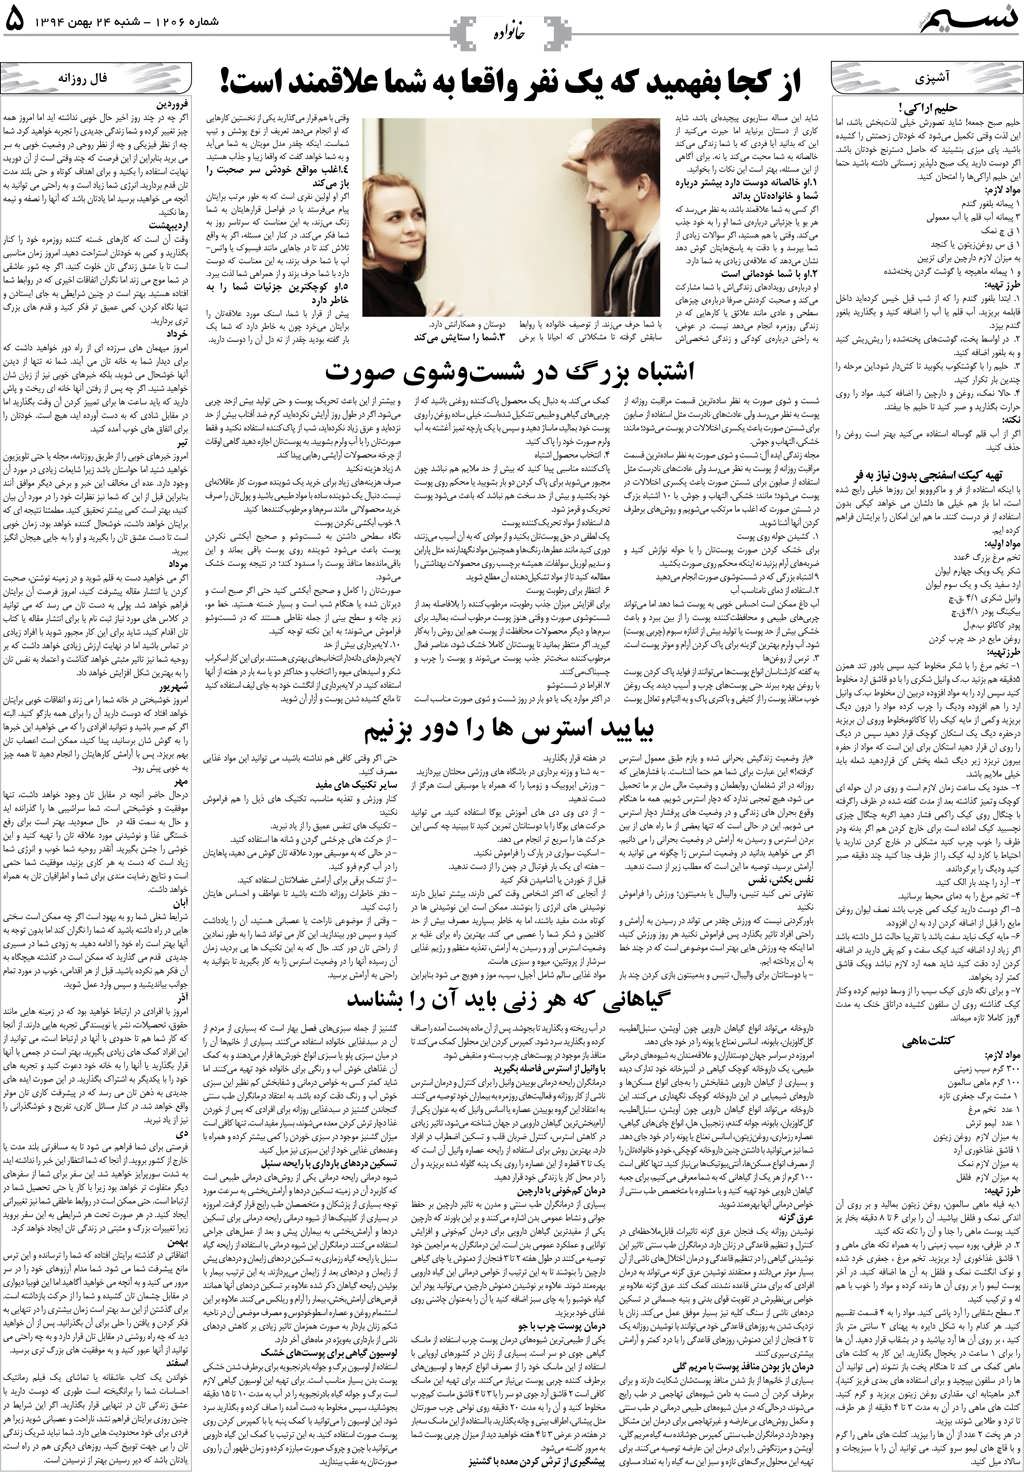 صفحه خانواده روزنامه نسیم شماره 1206